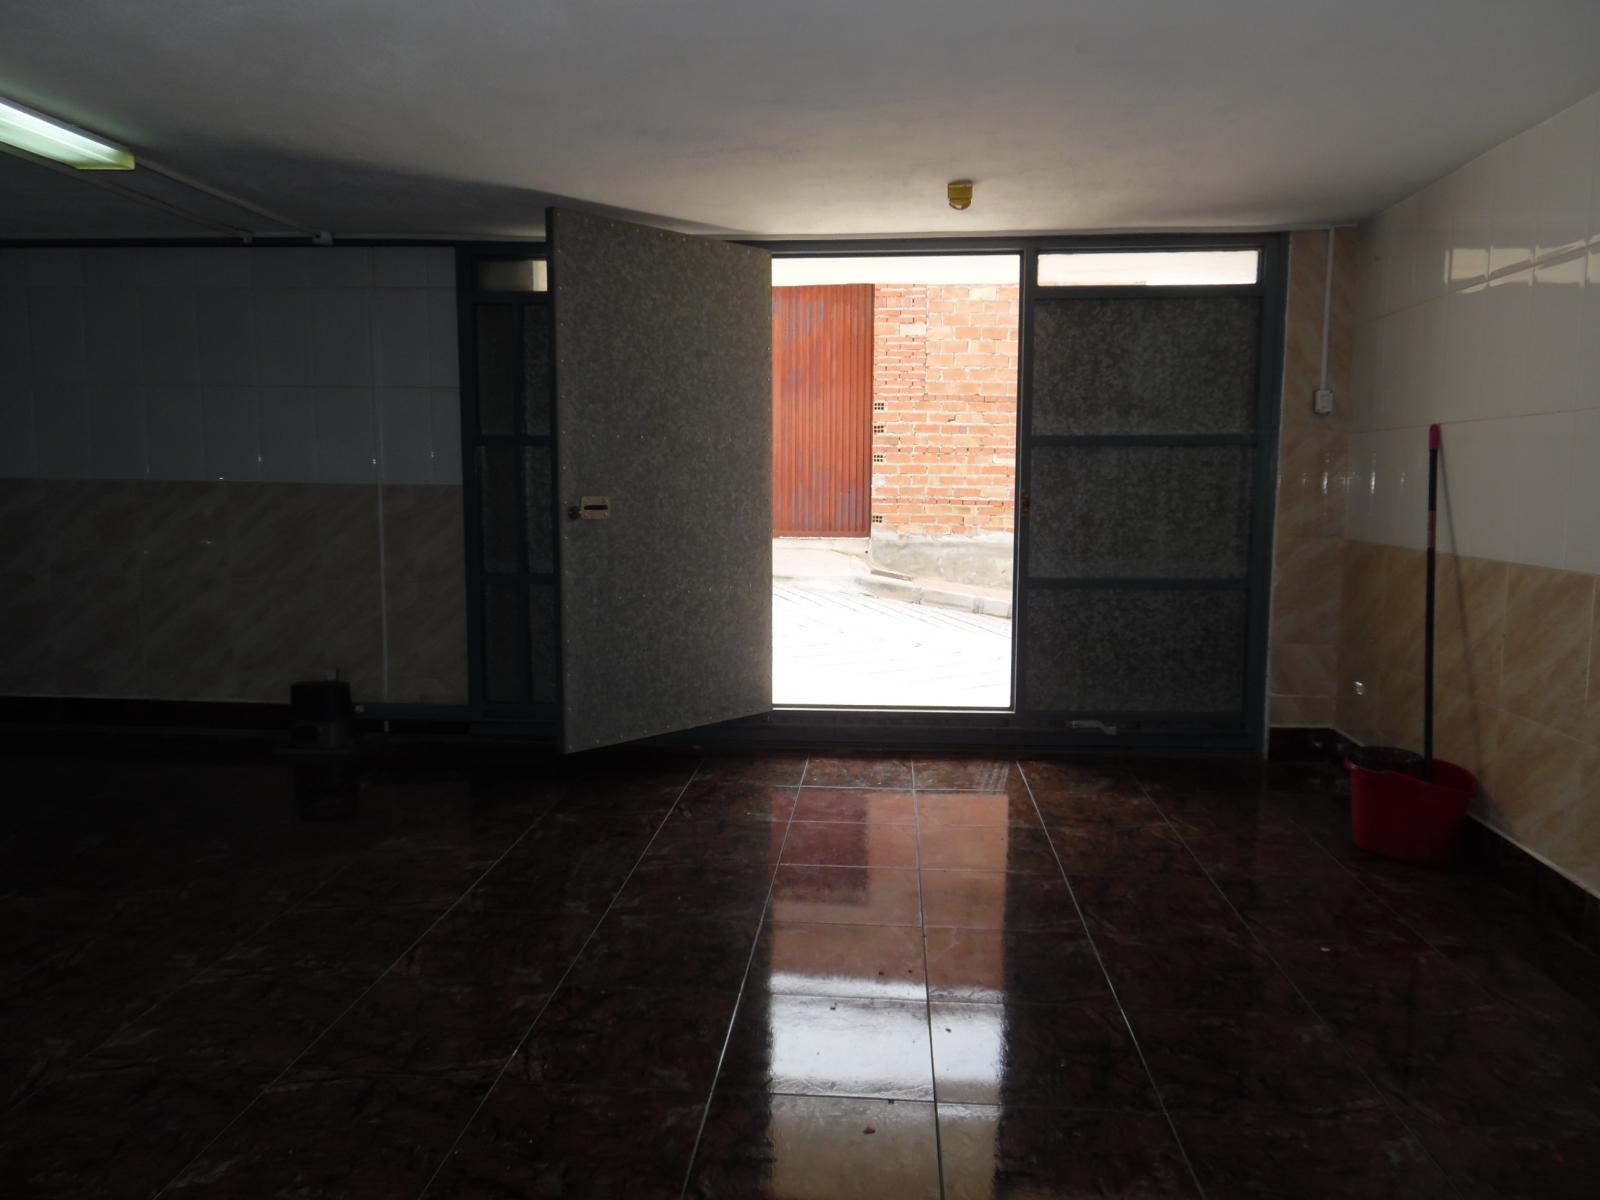 VYHRAZENO 3 ložnice 2 koupelny se 3 úrovněmi bydlení s podkrovní terasou s panoramatickým výhledem